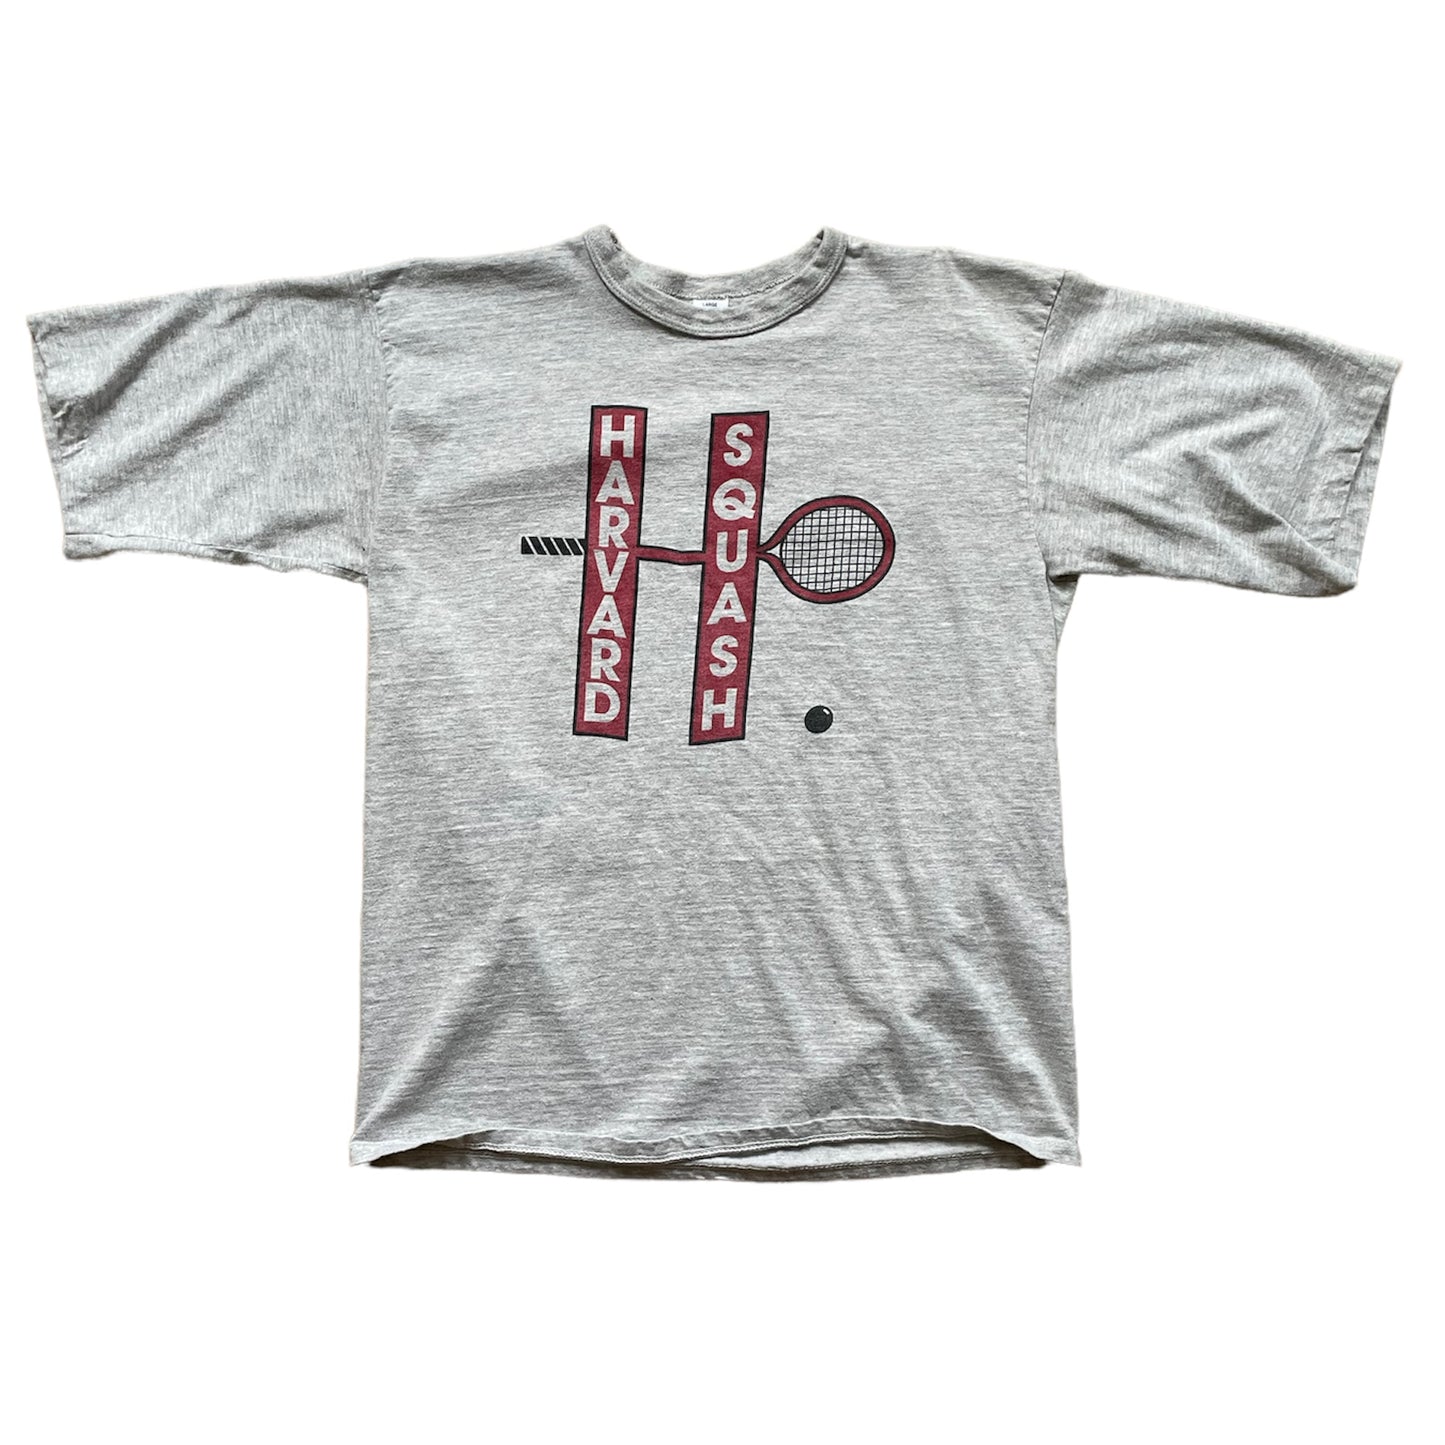 Vintage Harvard Squash T-Shirt